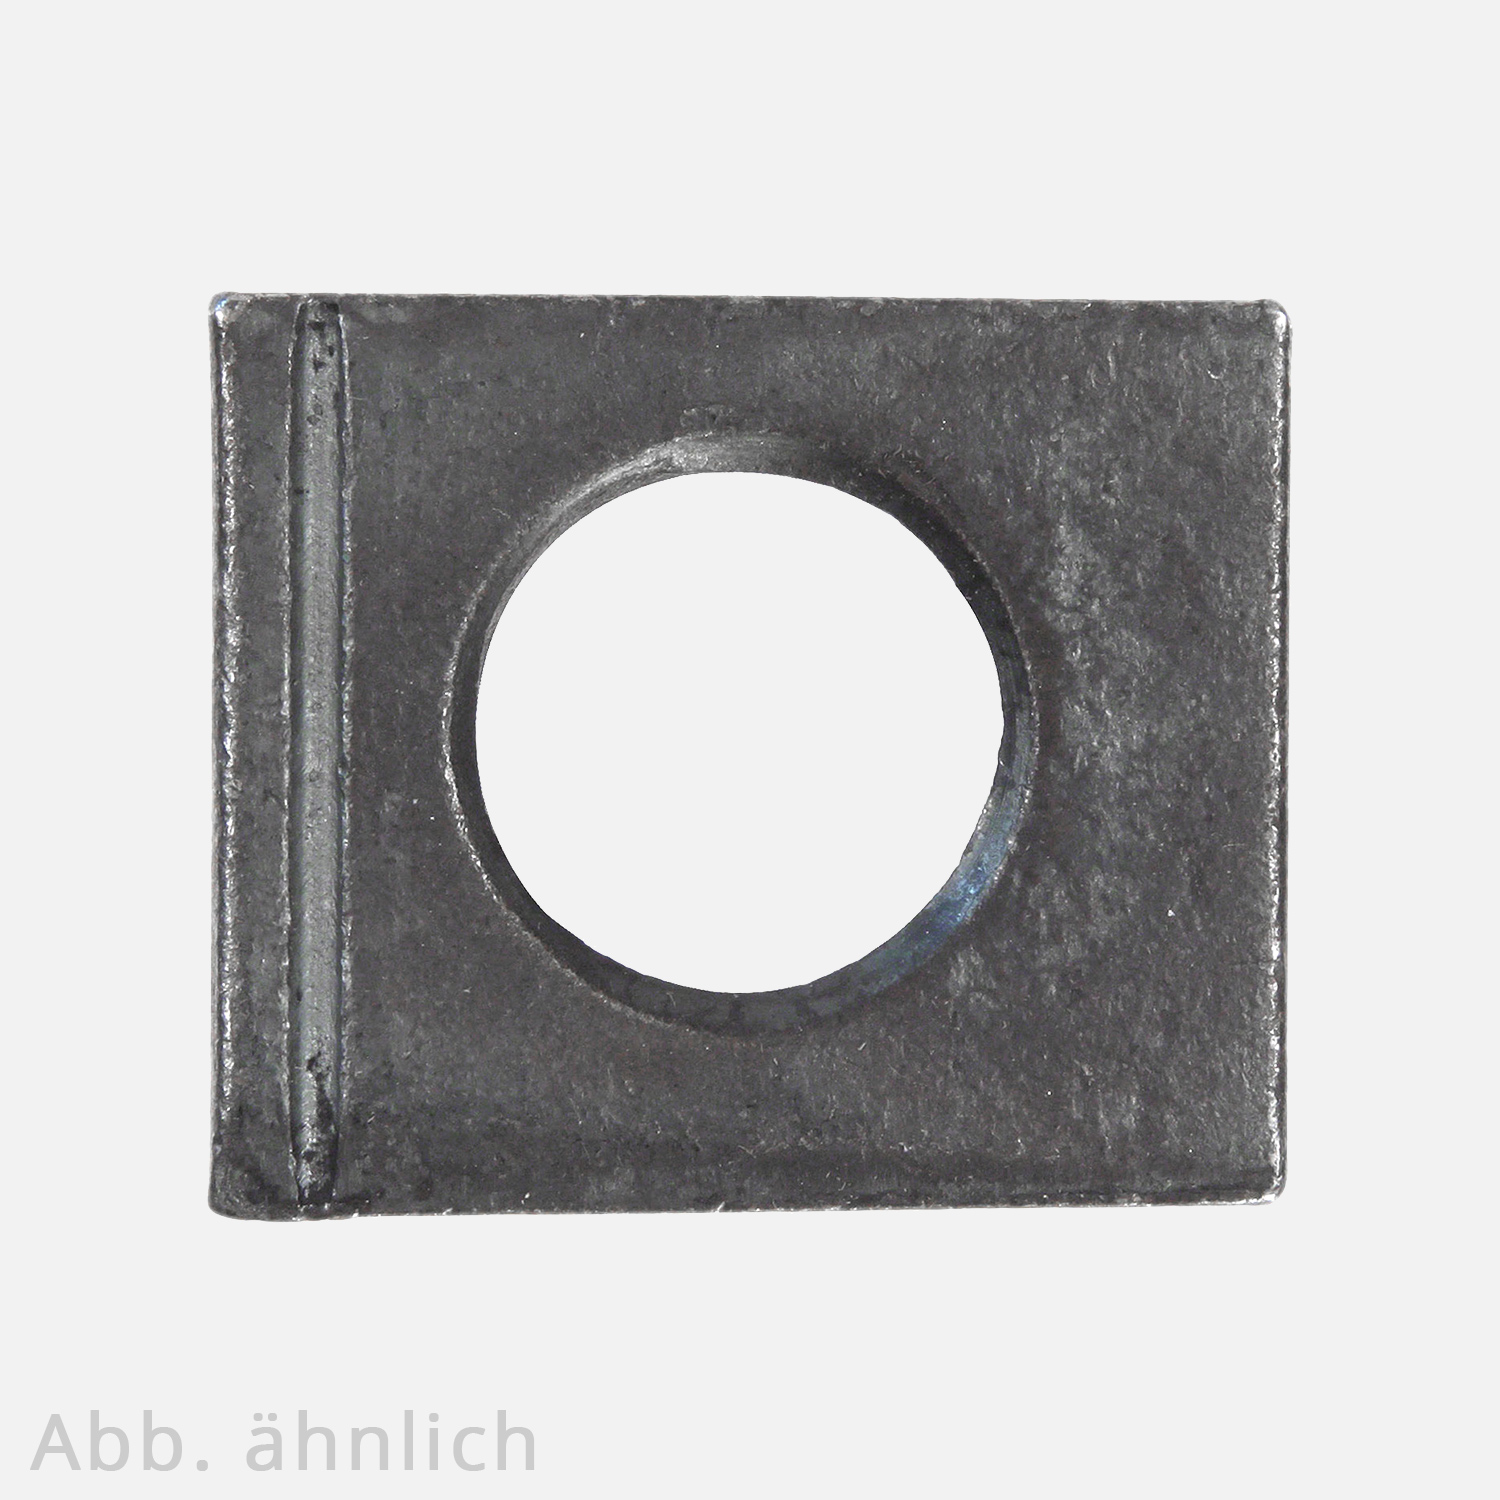 1 Vierkantscheibe - keilförmig 14% - 25 mm - DIN 6917 - Stahl vergütet